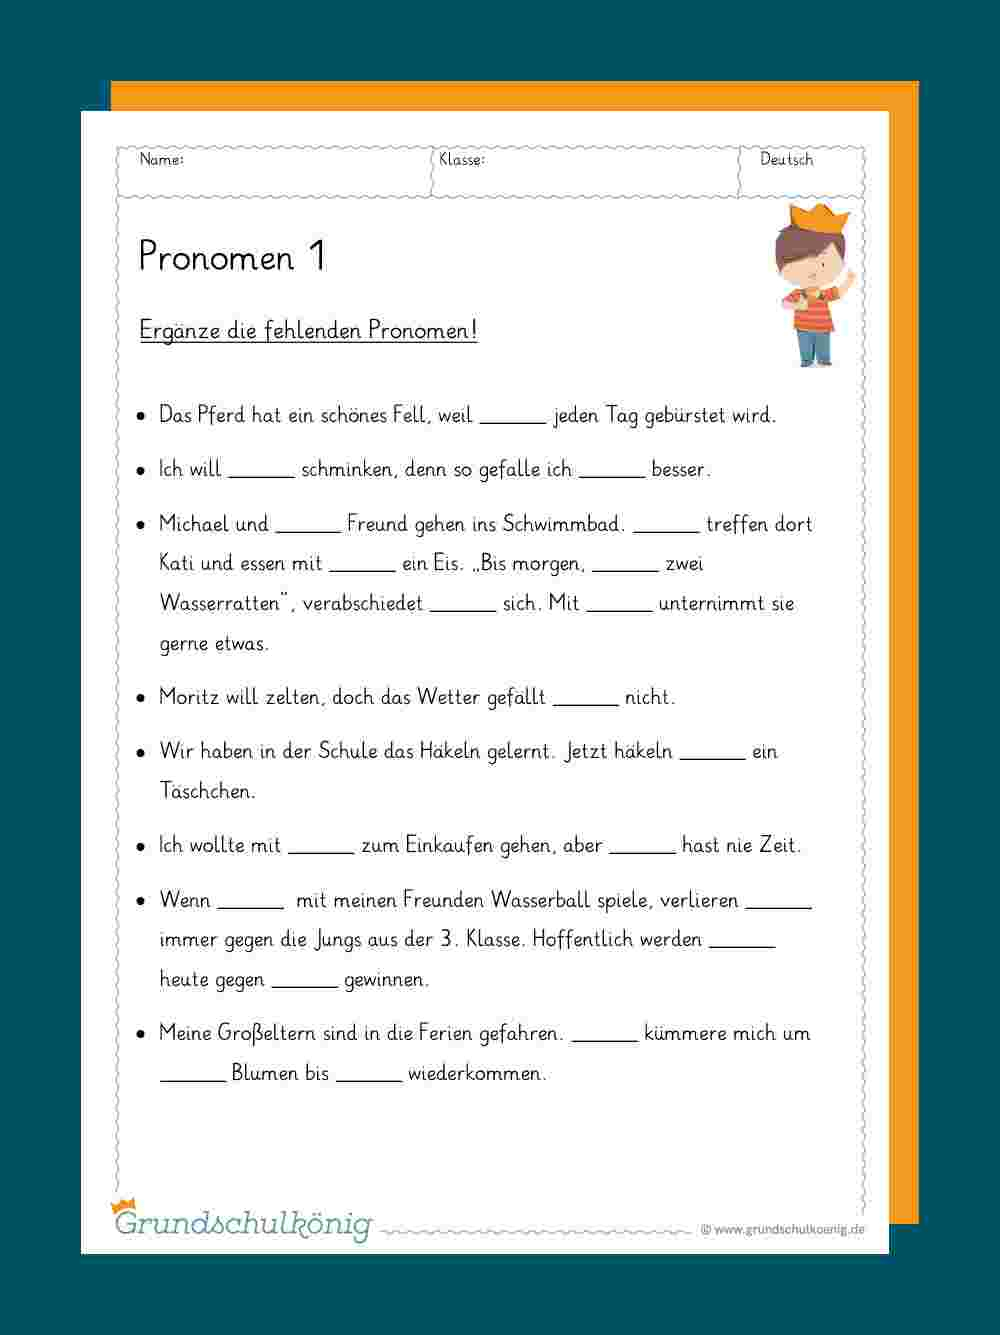 Pronomen in Übungsaufgaben 3 Klasse Deutsch